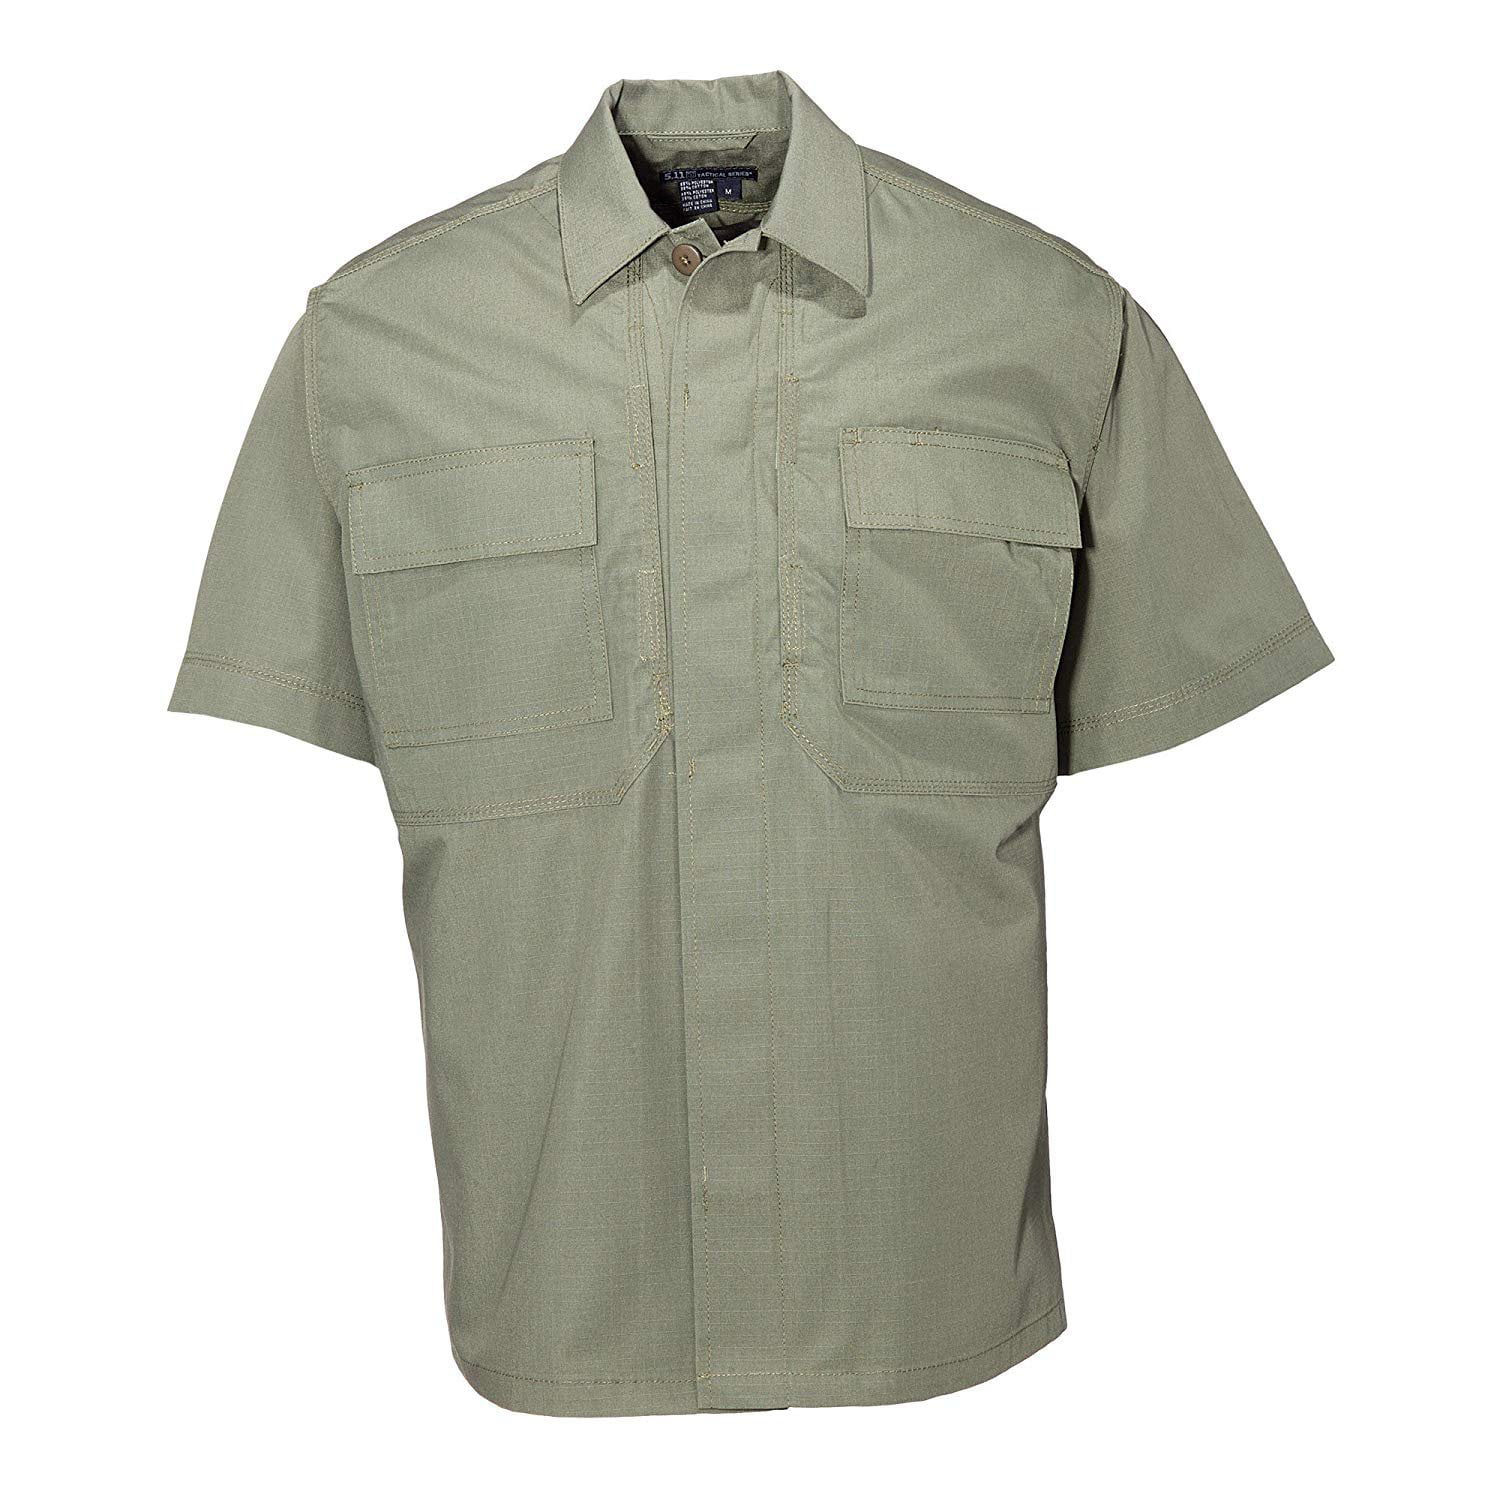 5.11 Tactical - 5.11 Tactical Men's Taclite TDU Short Sleeve Shirt, X ...